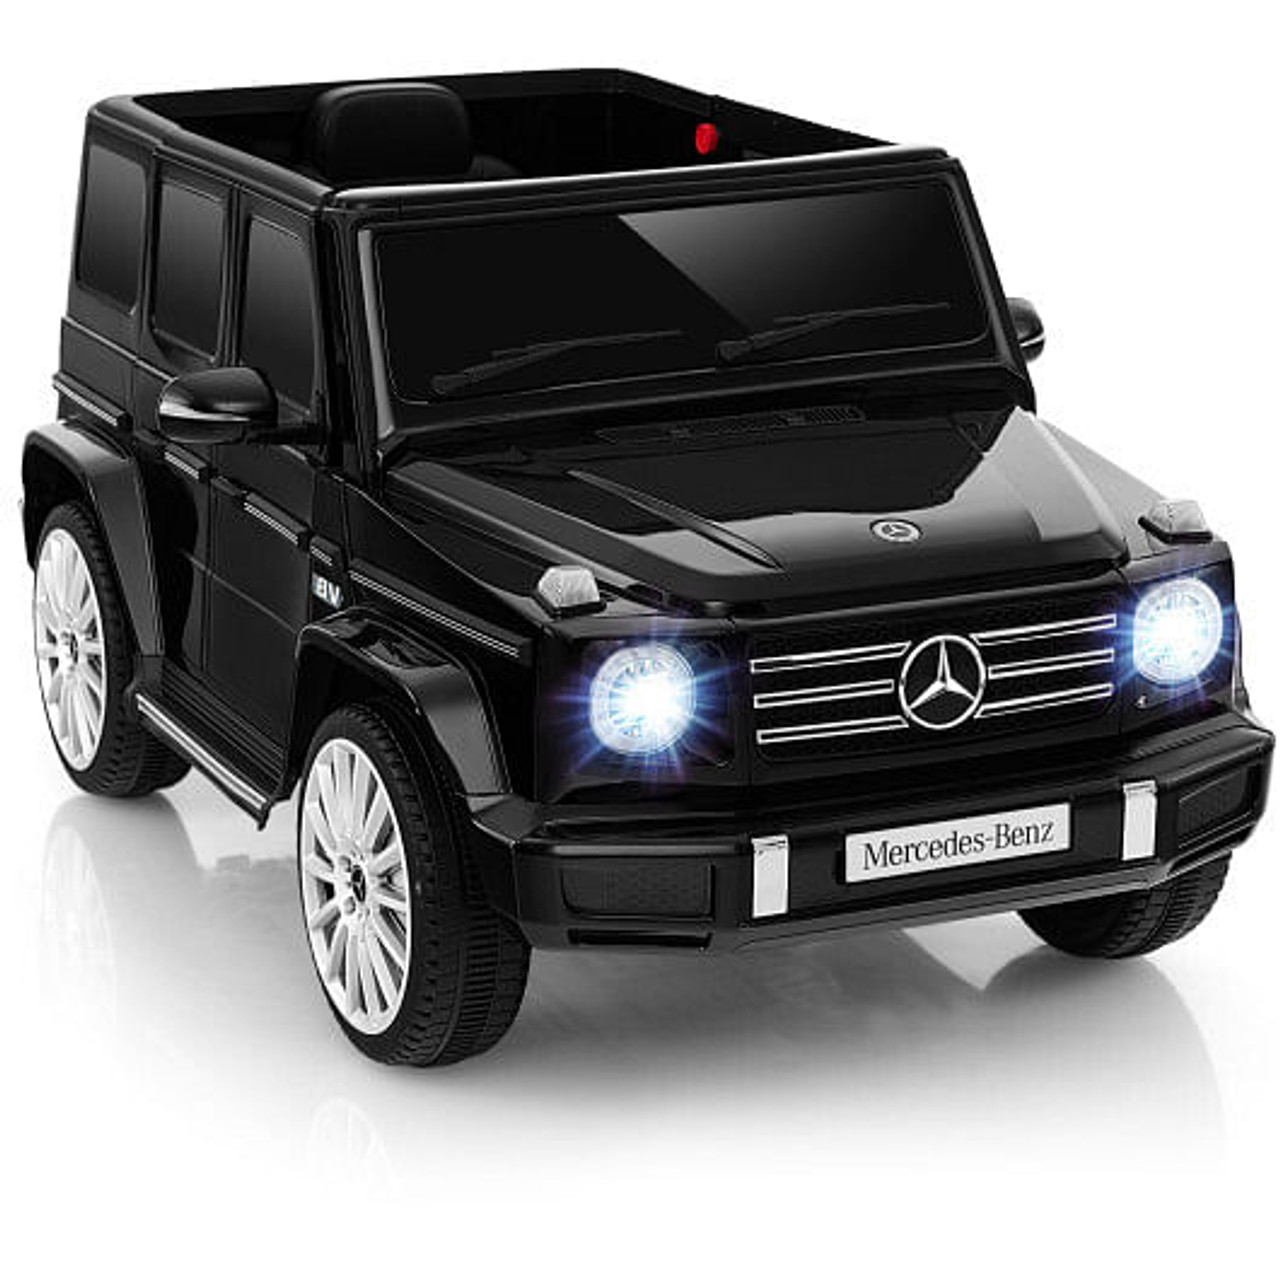 12V Battery Powered Licensed Mercedes-Benz G500 Kids Ride-on Car-Black